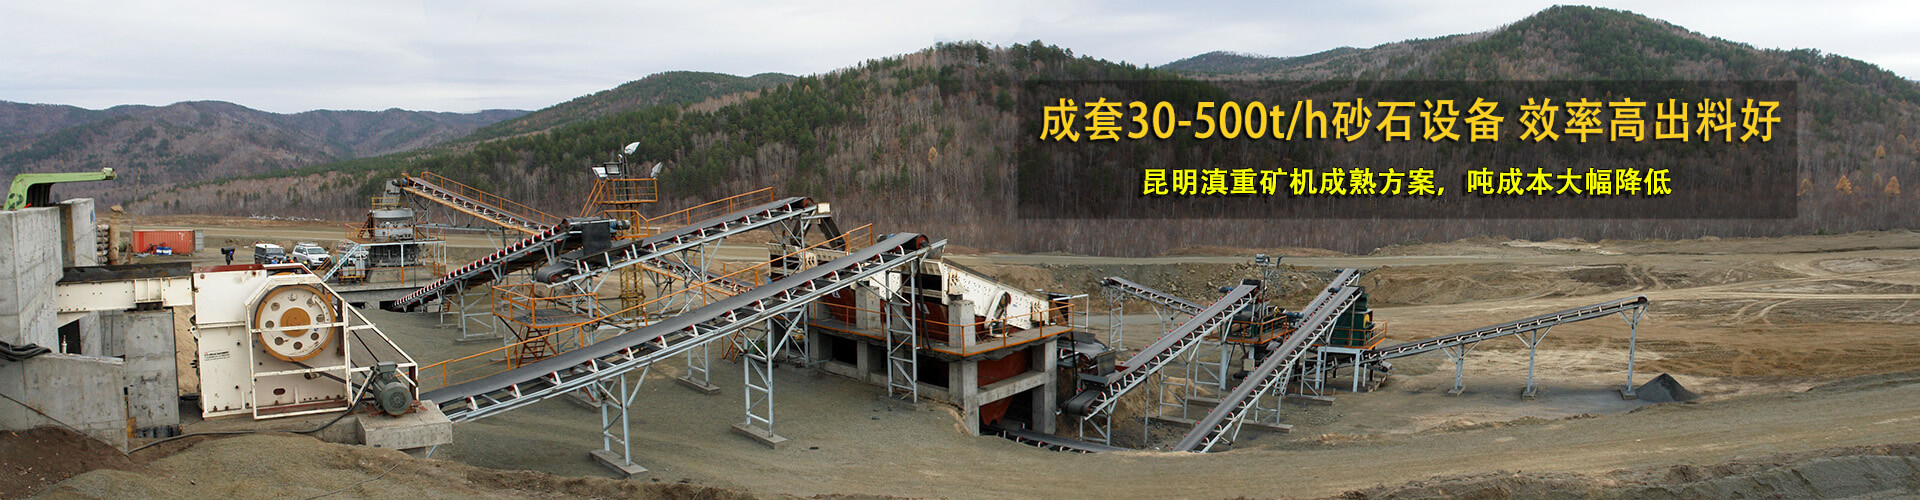 時產10-500t砂石骨料生產線可產出公分石和機制砂